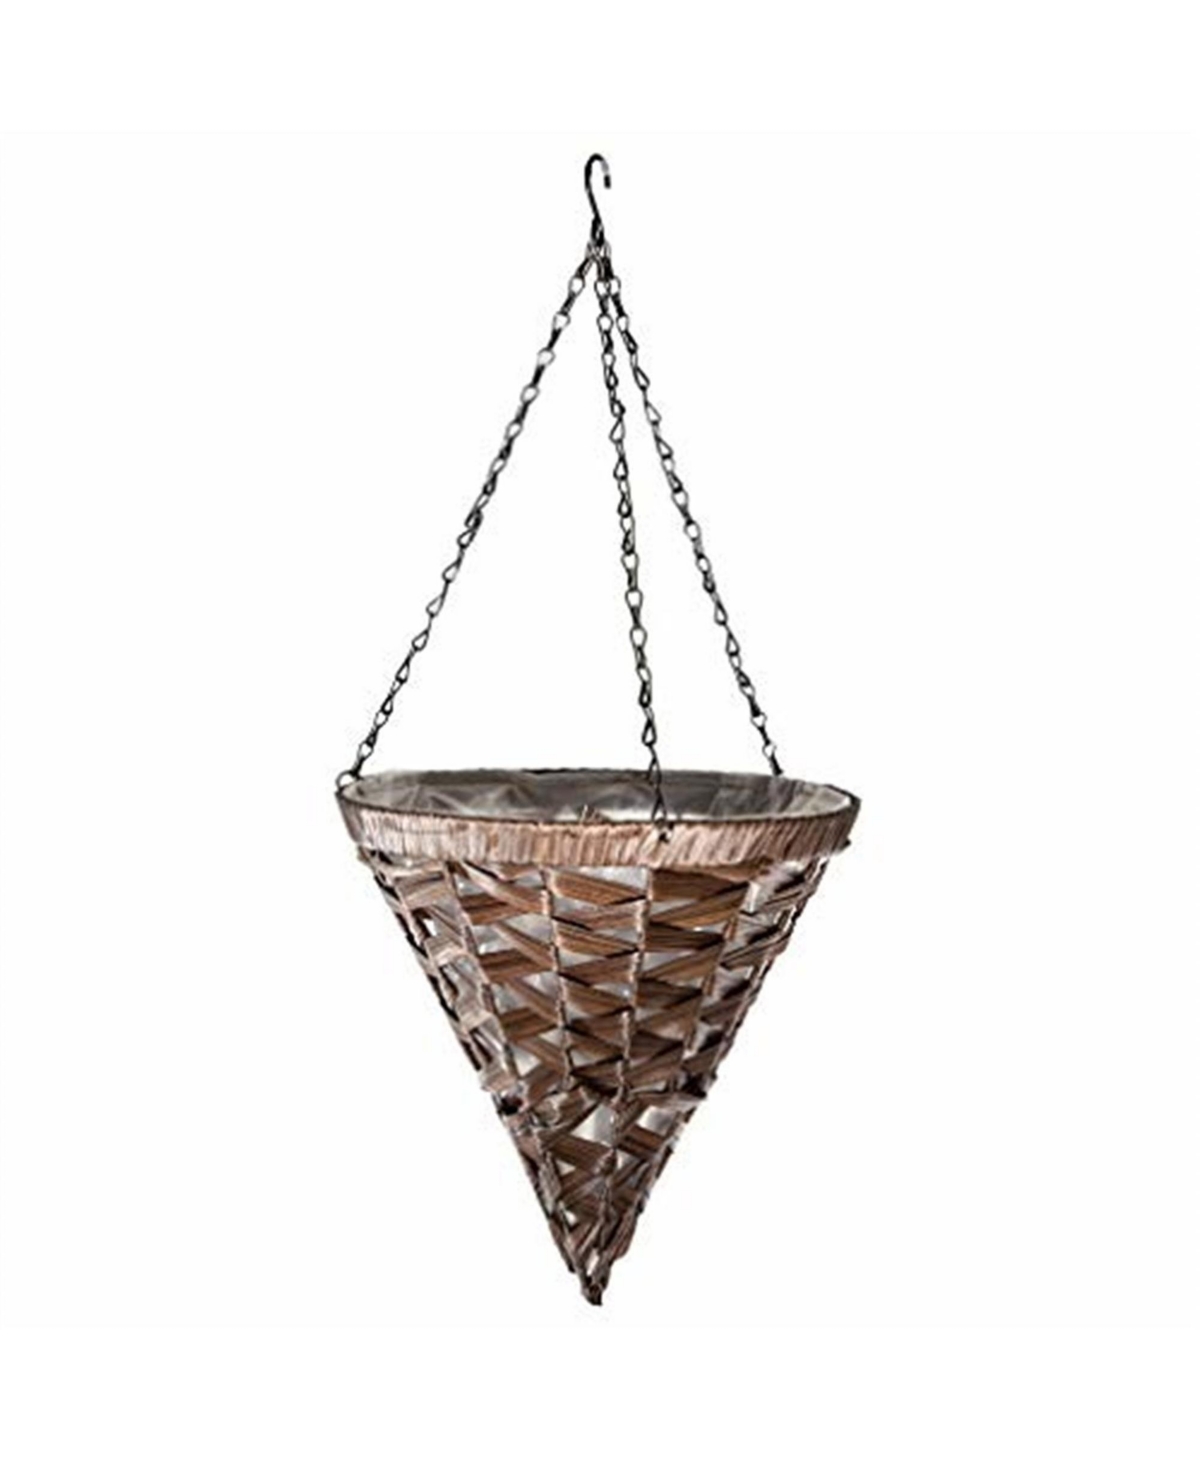 Woven Plastic Wicker Hanging Basket, Coffee Wicker - Brown